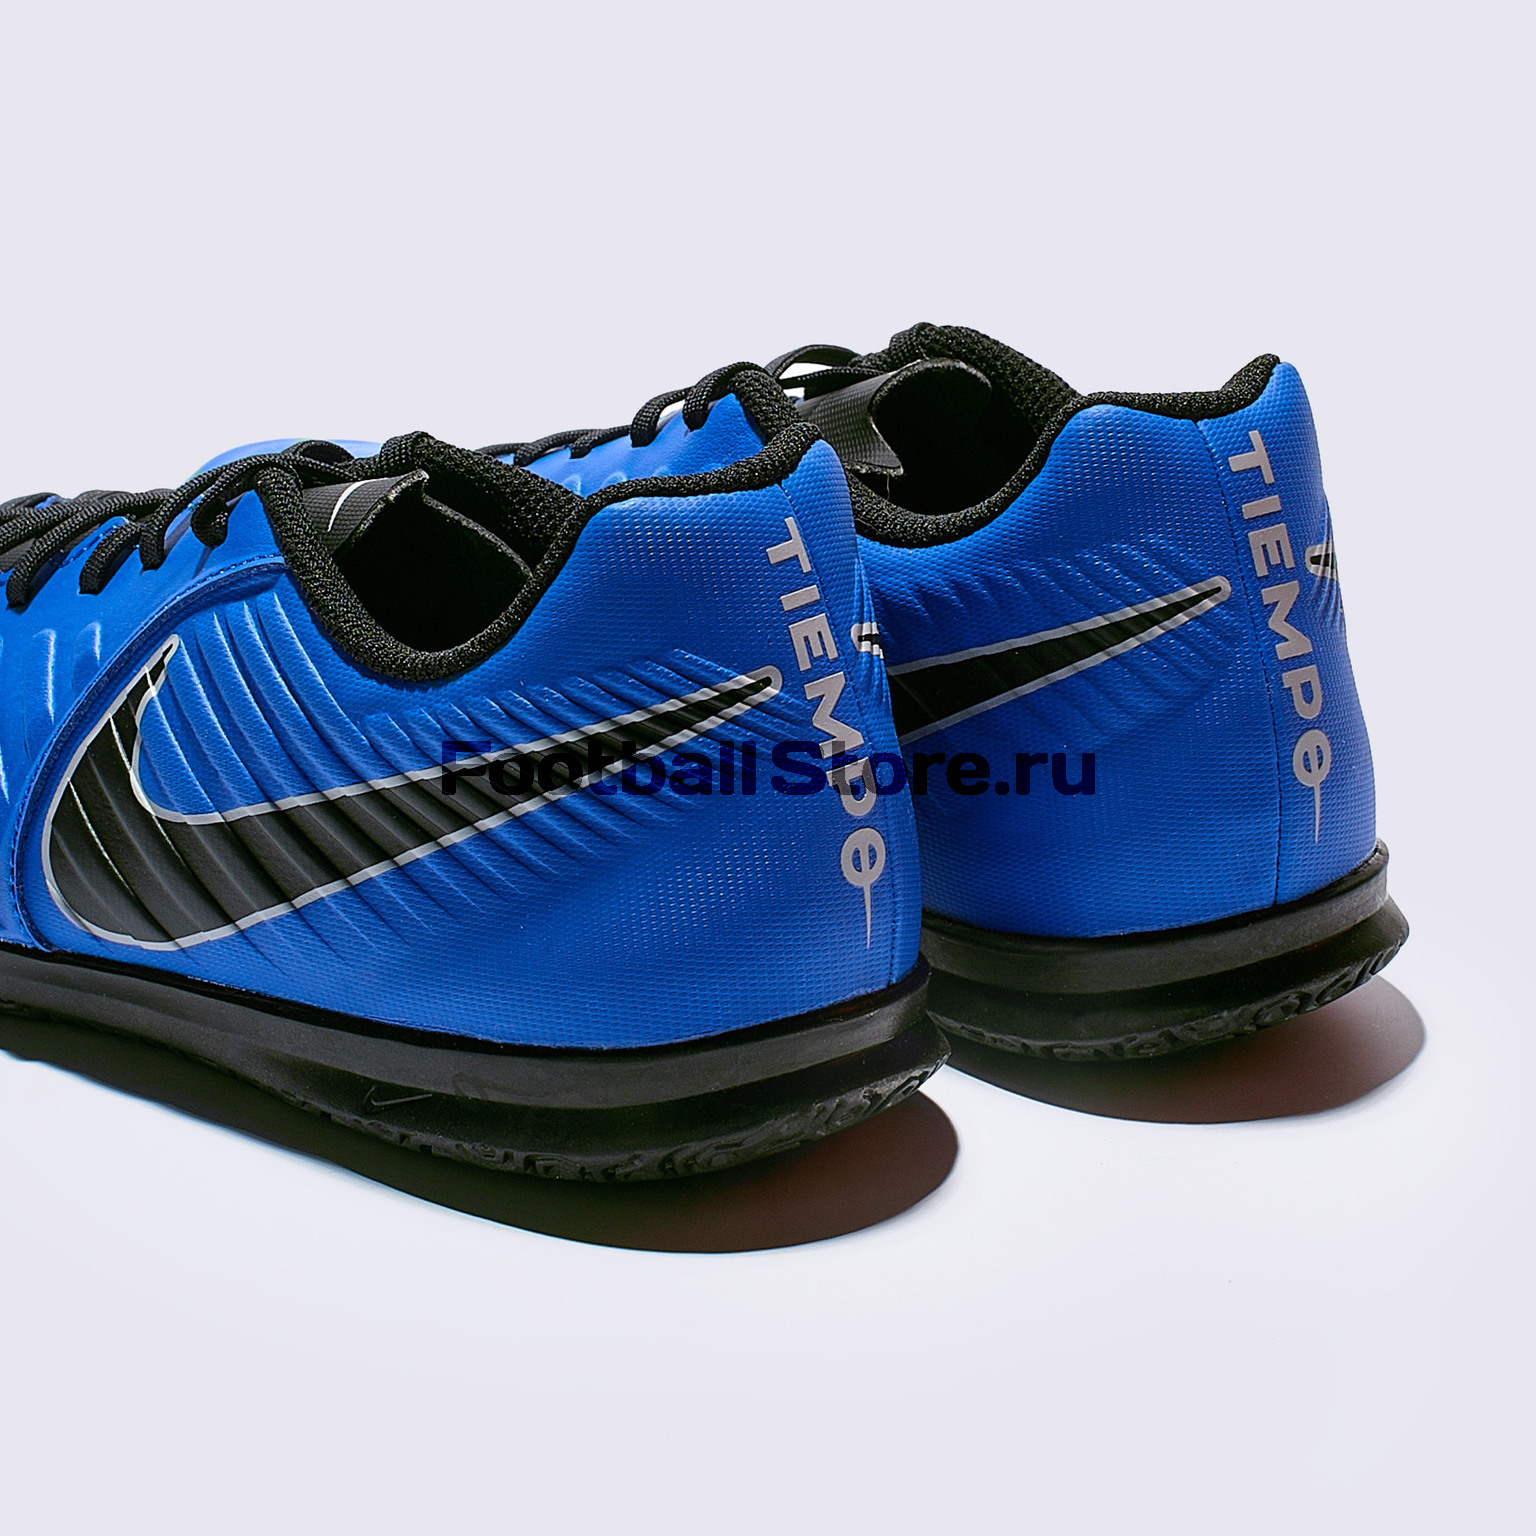 Футзалки Nike LegendX 7 Club IC AH7245-400